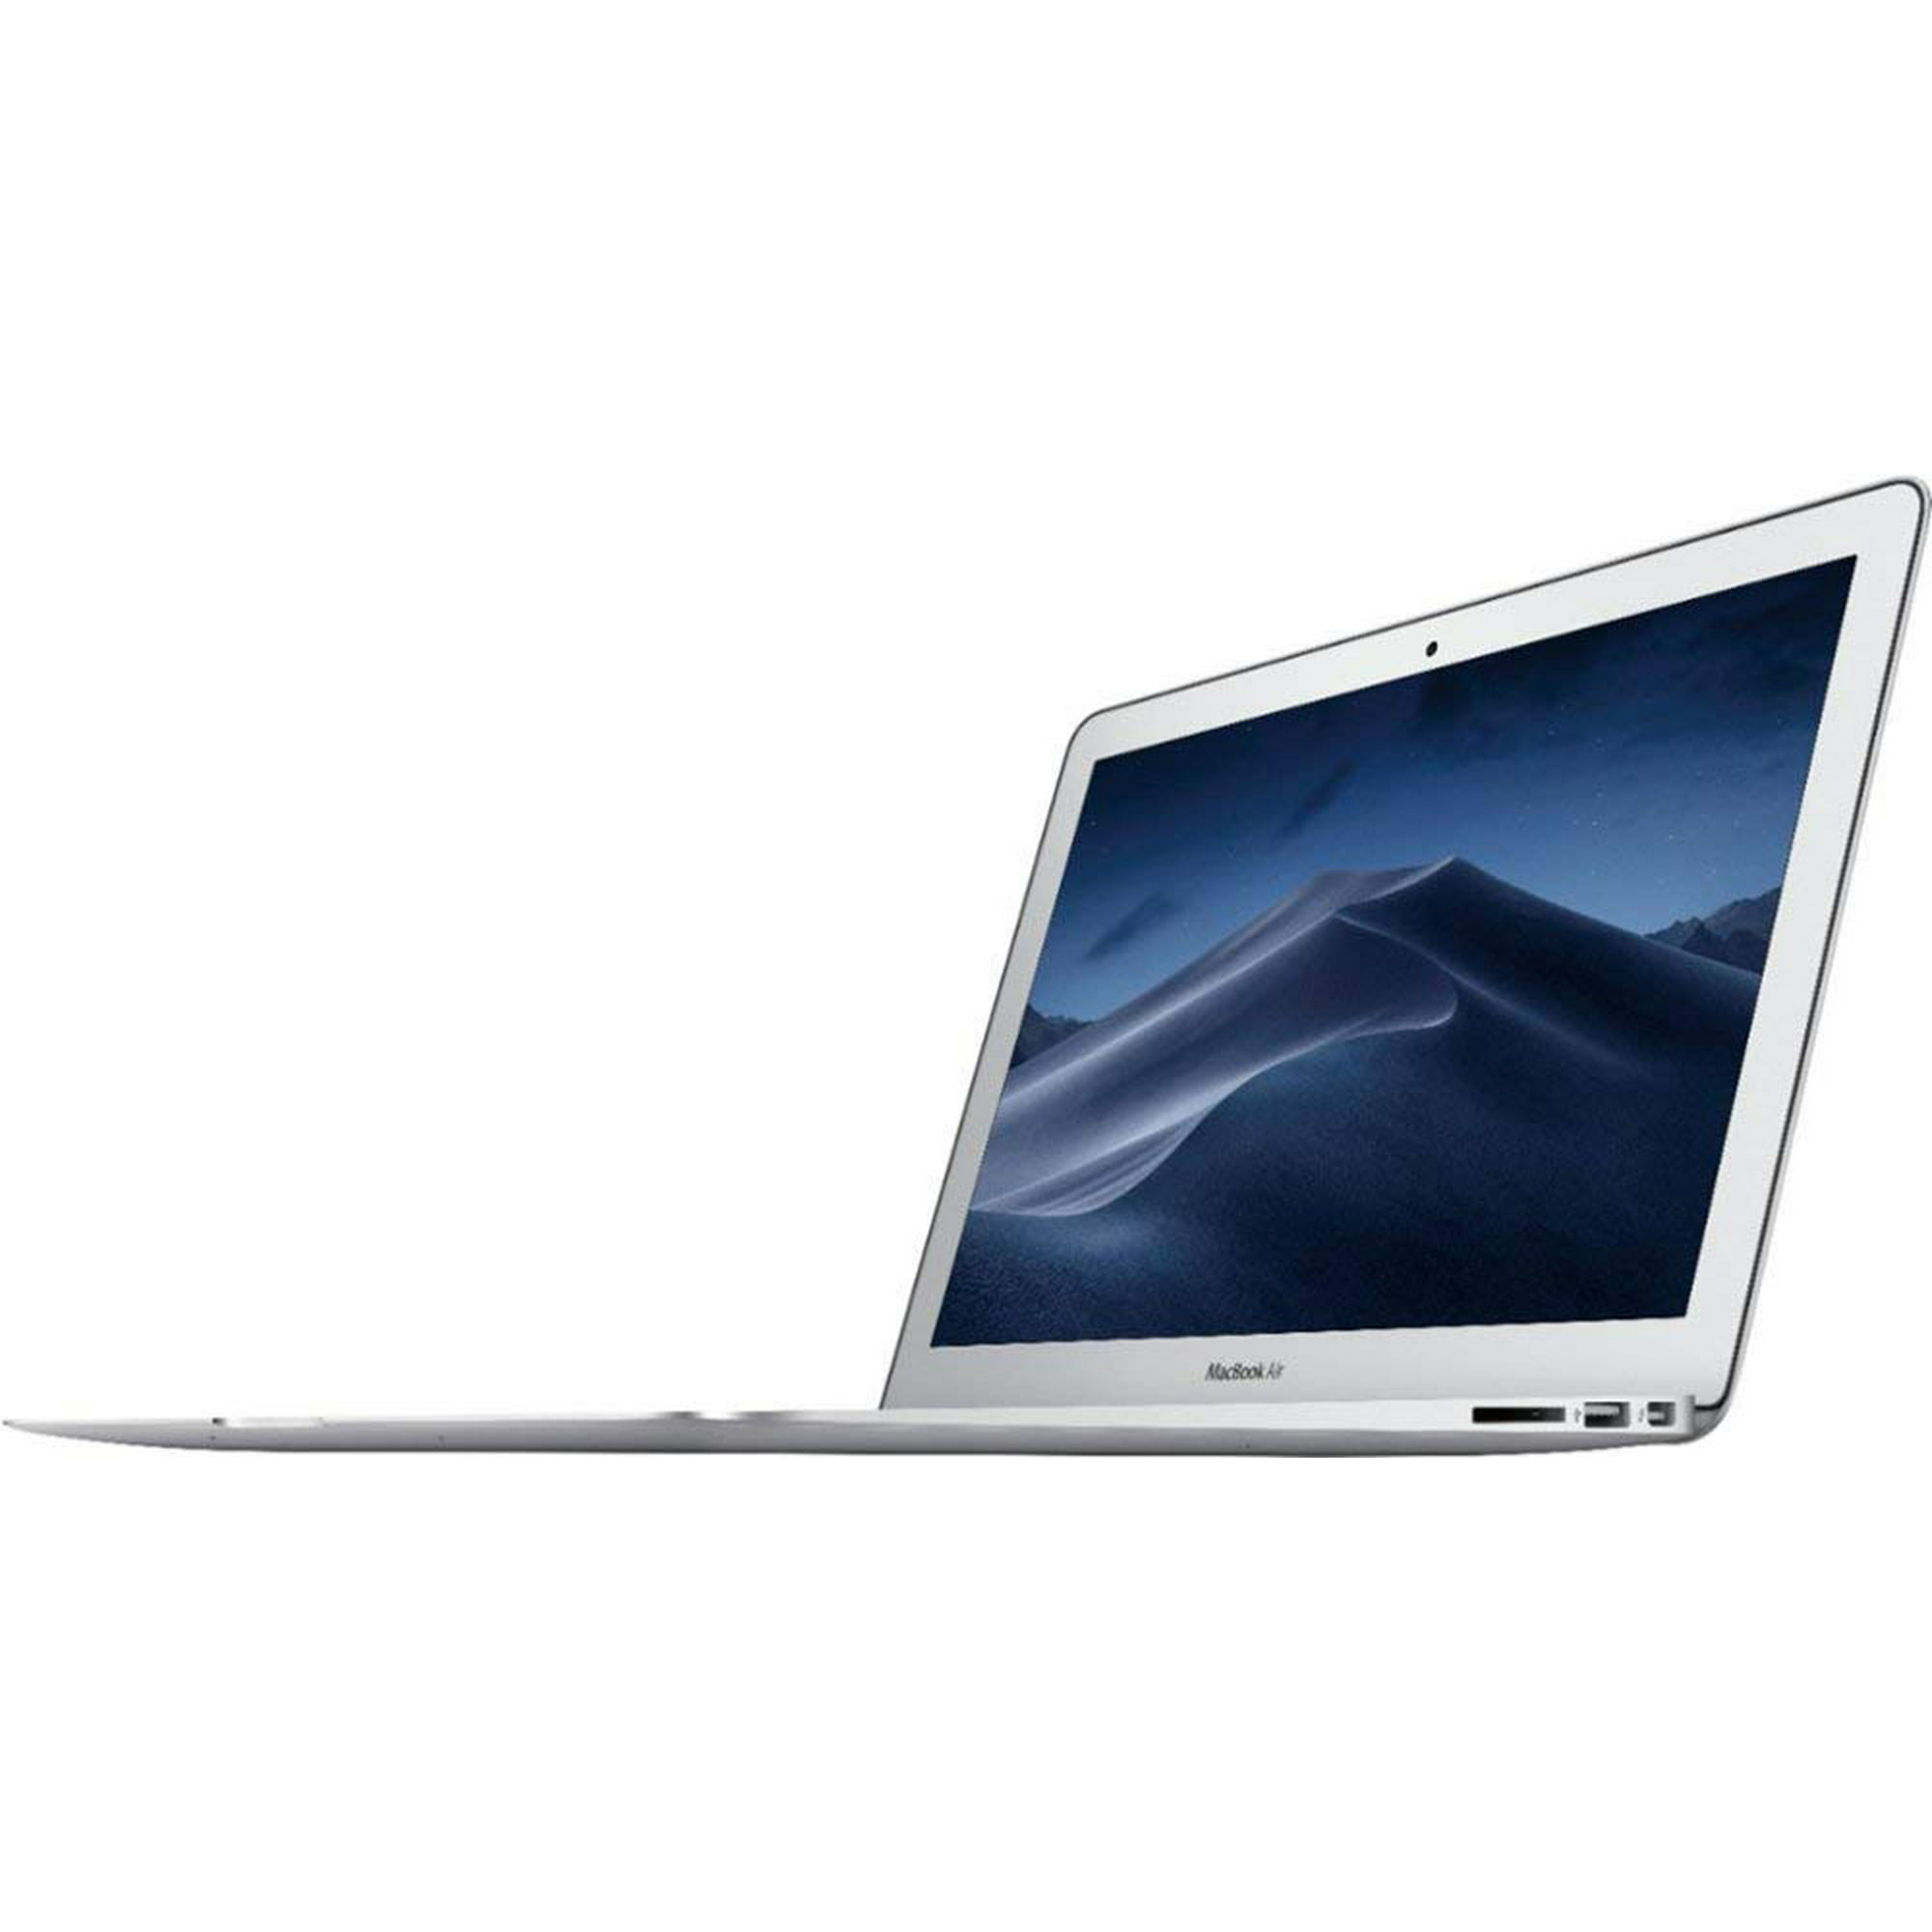 Apple MacBook Air 13 Inch 256GB (2017, Silver) (MQD42LLA) with 